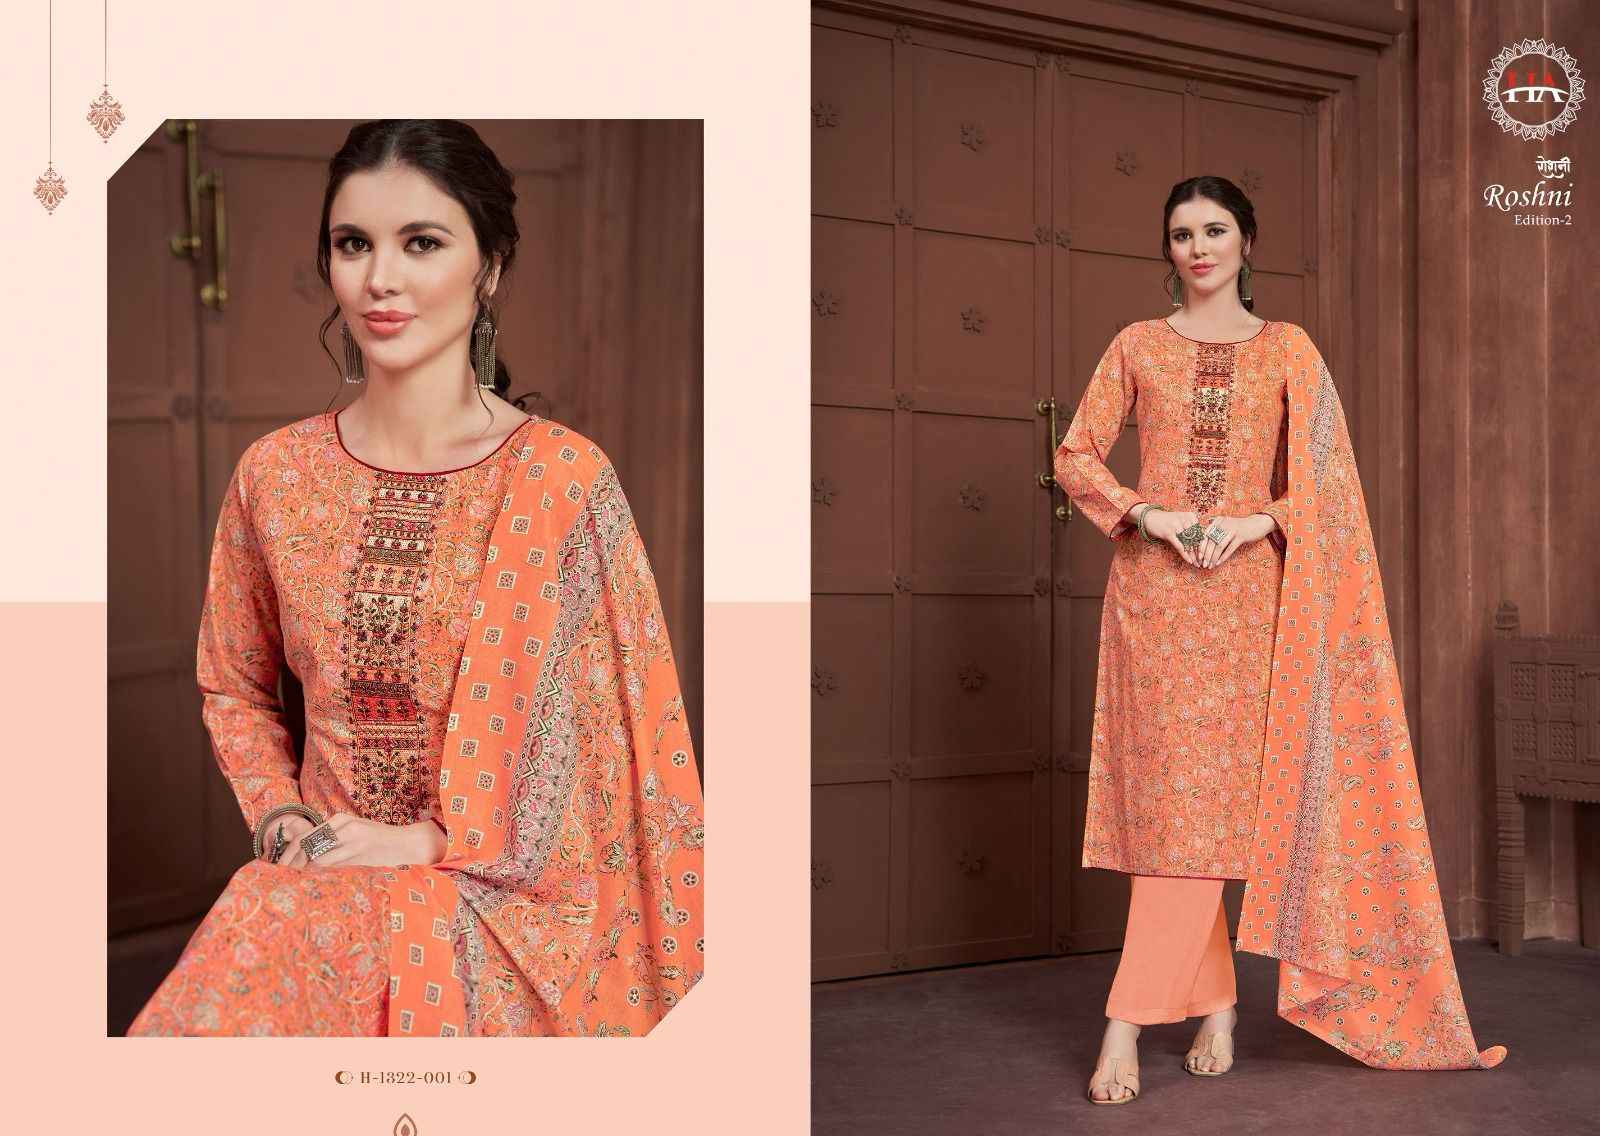 Harshit Roshni Vol-2 Pure Cotton Dress Material (8 Pc Catalog)